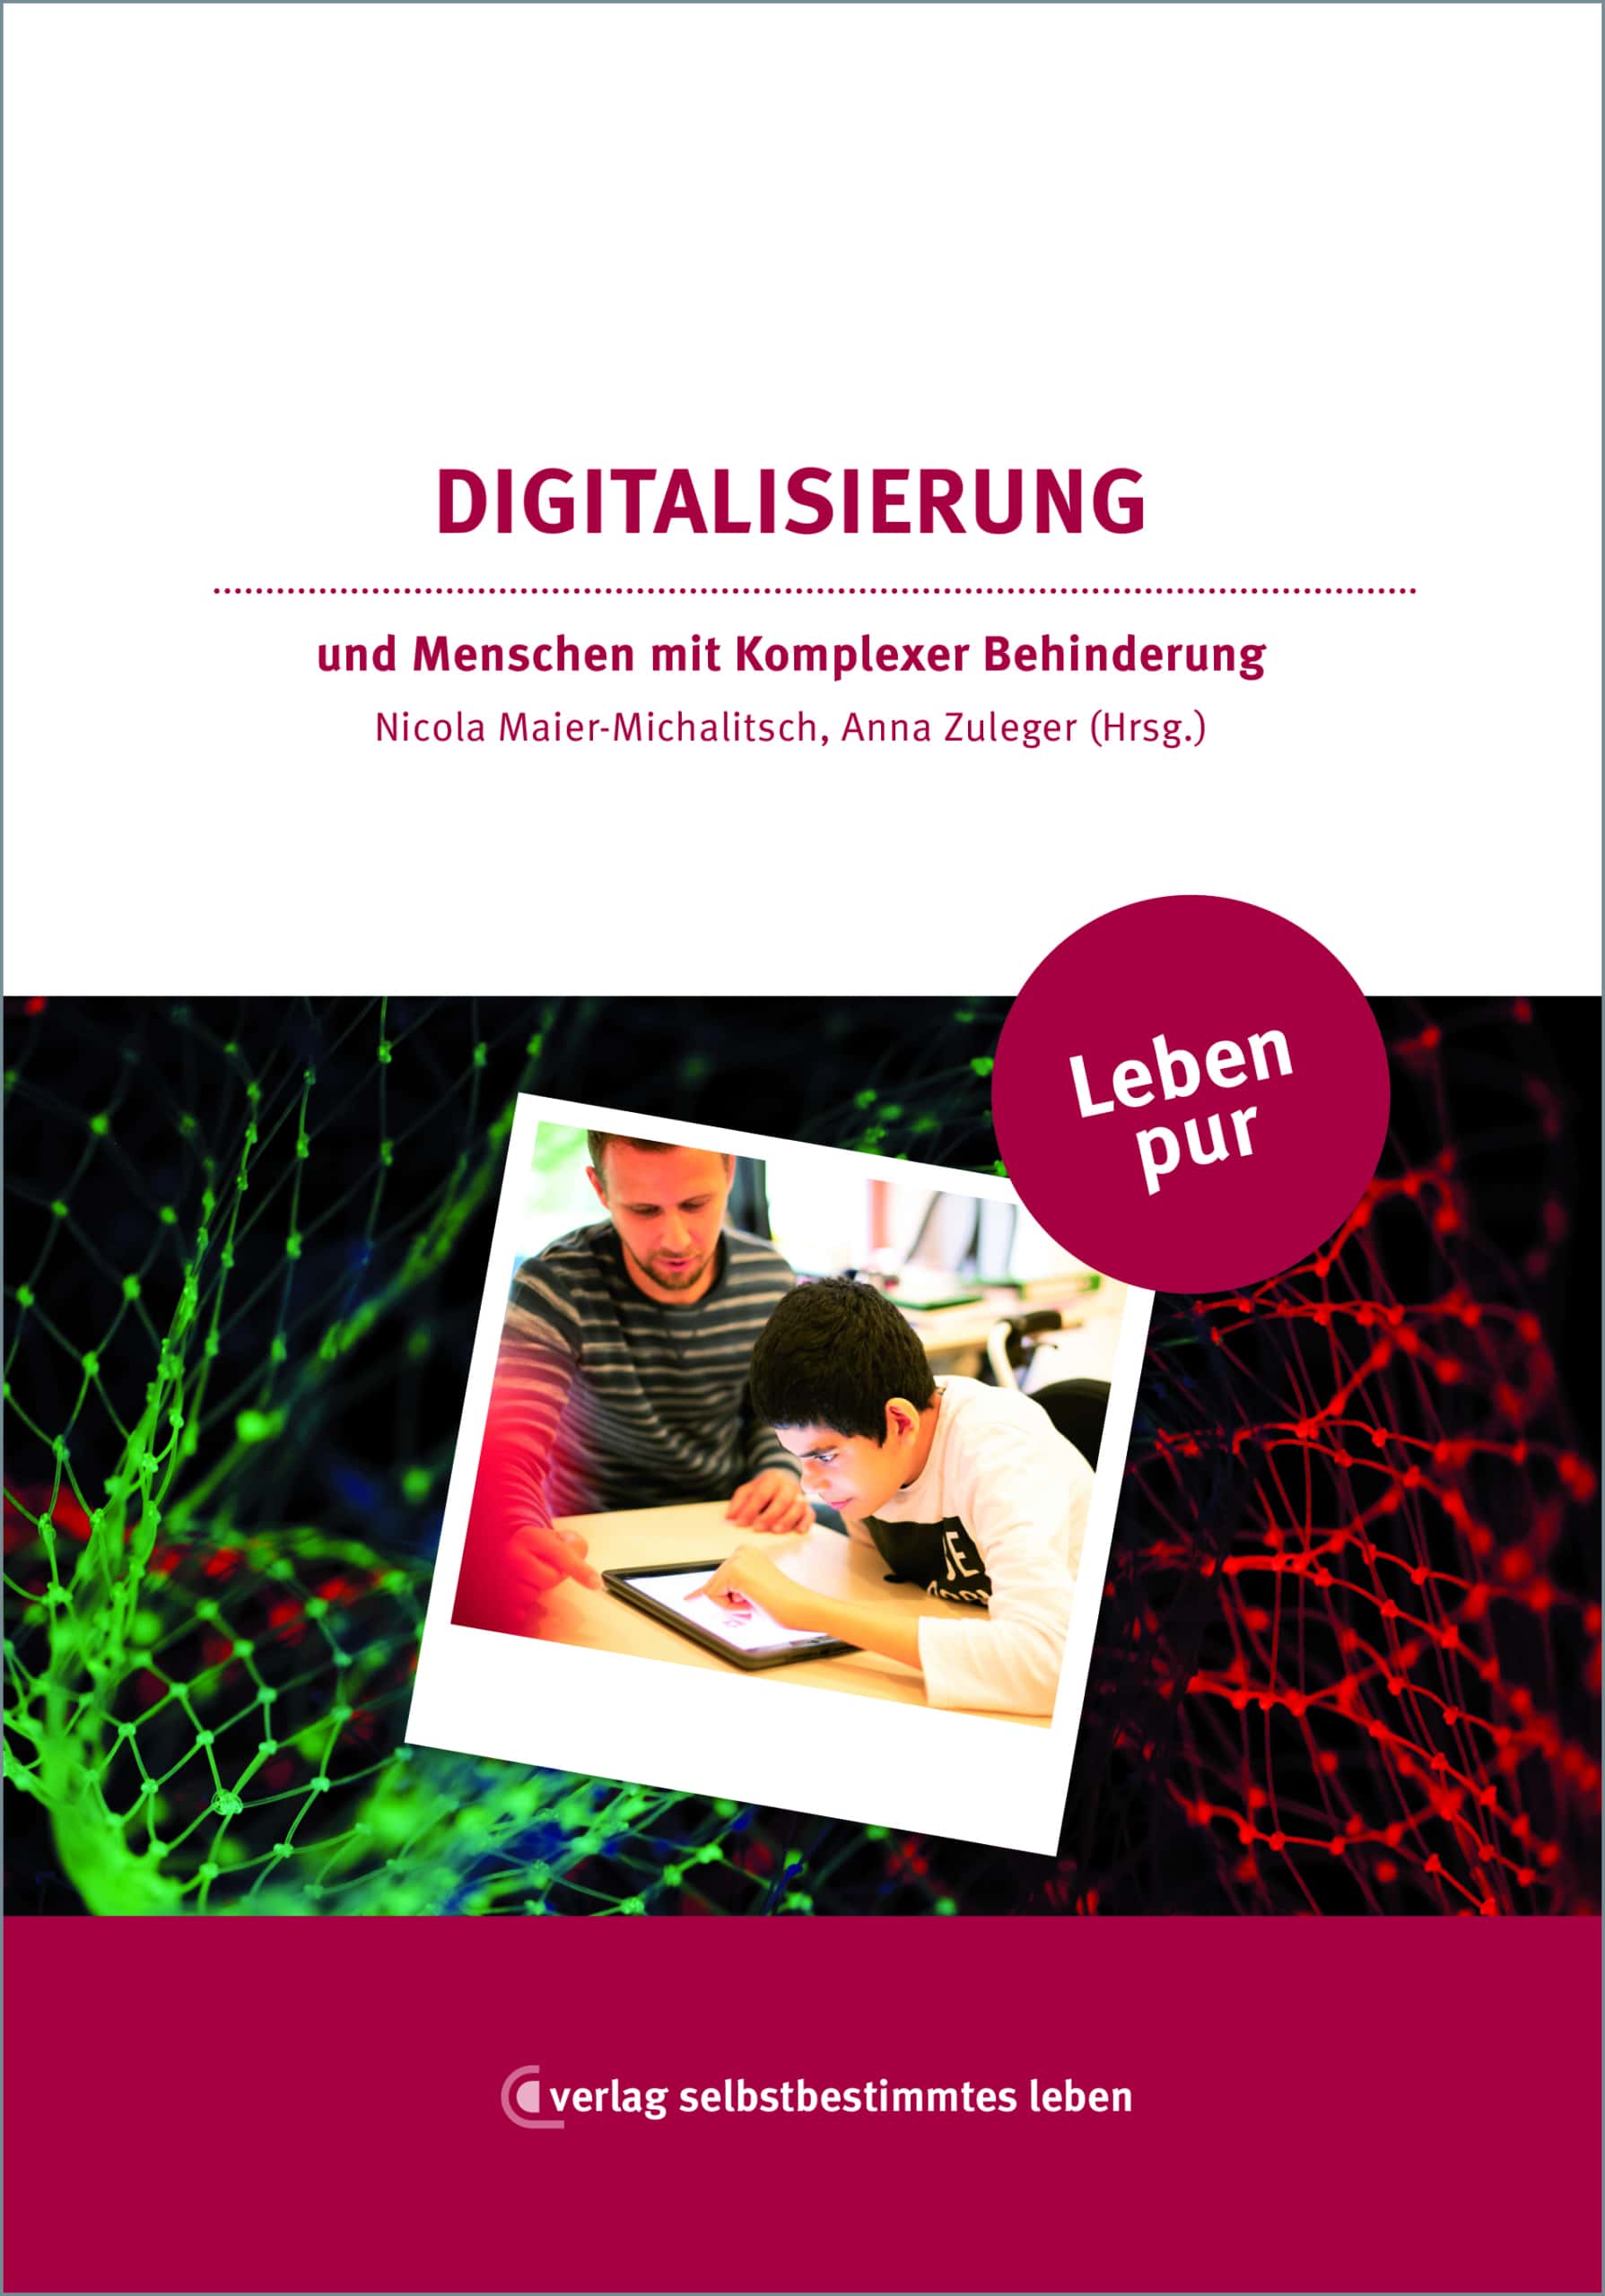 Buchcover mit dem Titel „Digitalisierung und Menschen mit komplexer Hintergründe“ zeigt zwei Personen, die auf ein Tablet schauen, mit abstrakten digitalen Grafiken im Hintergrund.